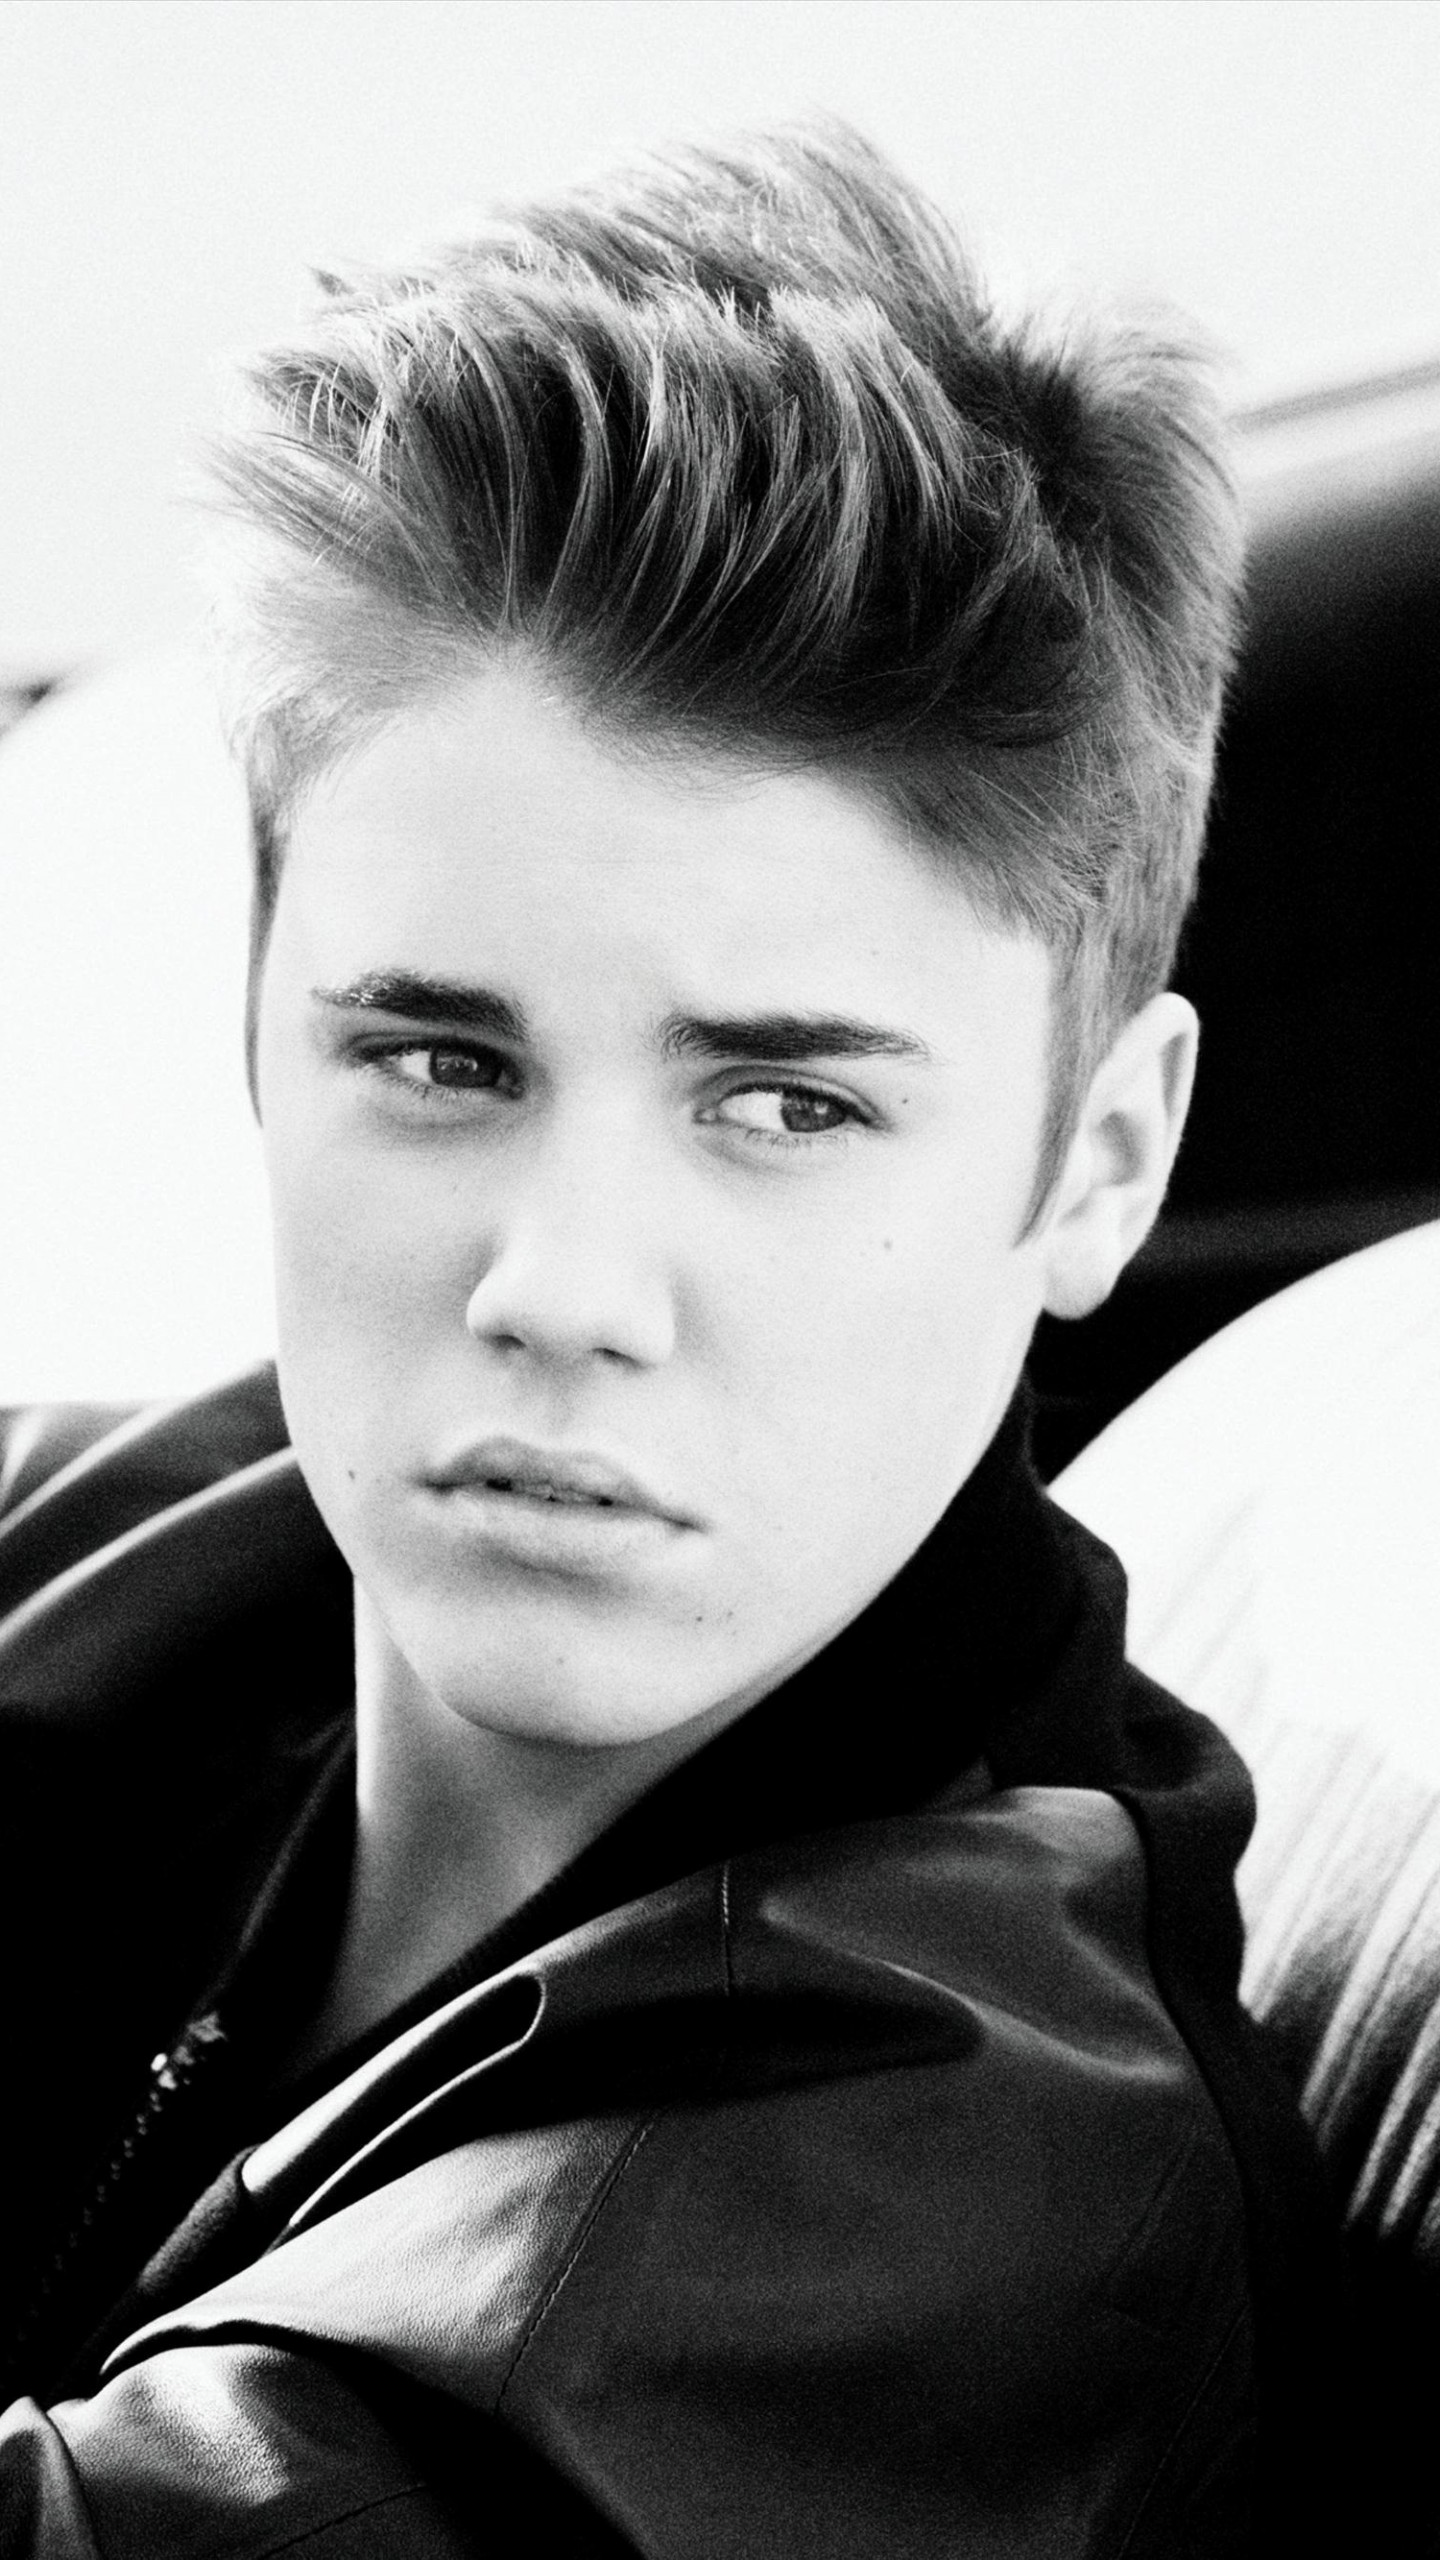 Wallpaper Justin Bieber, Most Popular Celebs, singer, actor ...